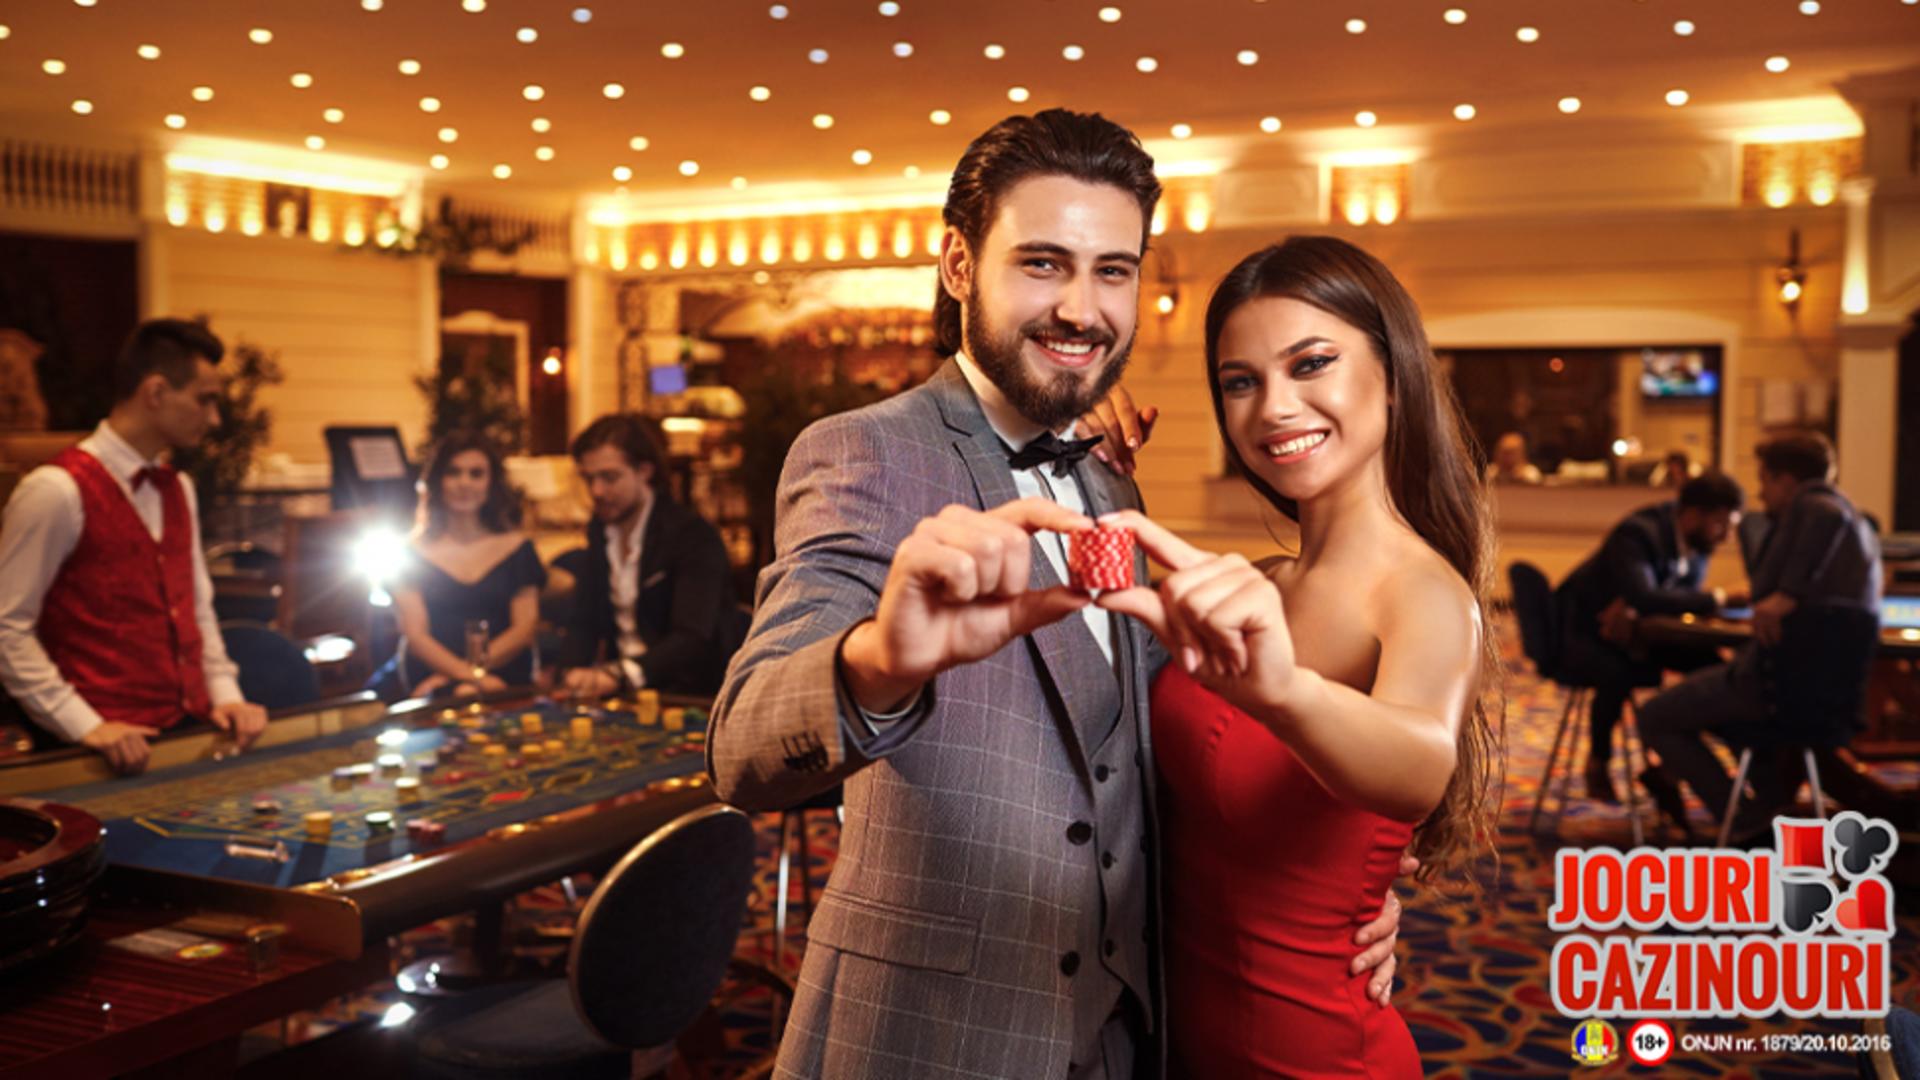 Jocuricazinouri.ro: De ce oamenii bogati se joacă la cazino?